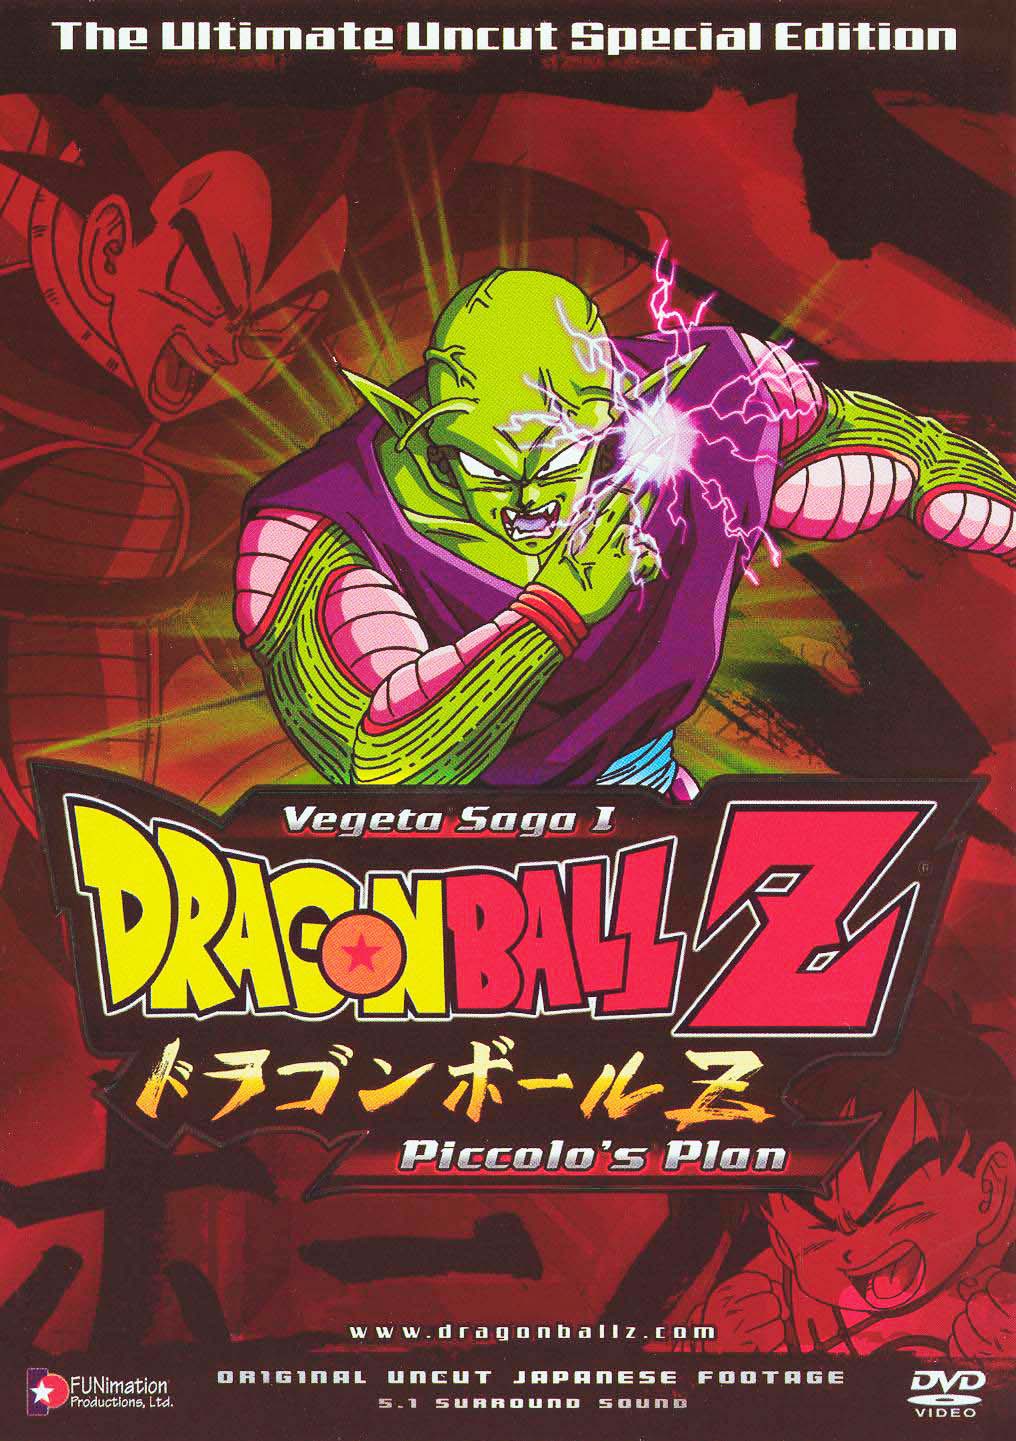 Dragon Ball Z DVD Home Media Guide & Retrospective - Episode 2